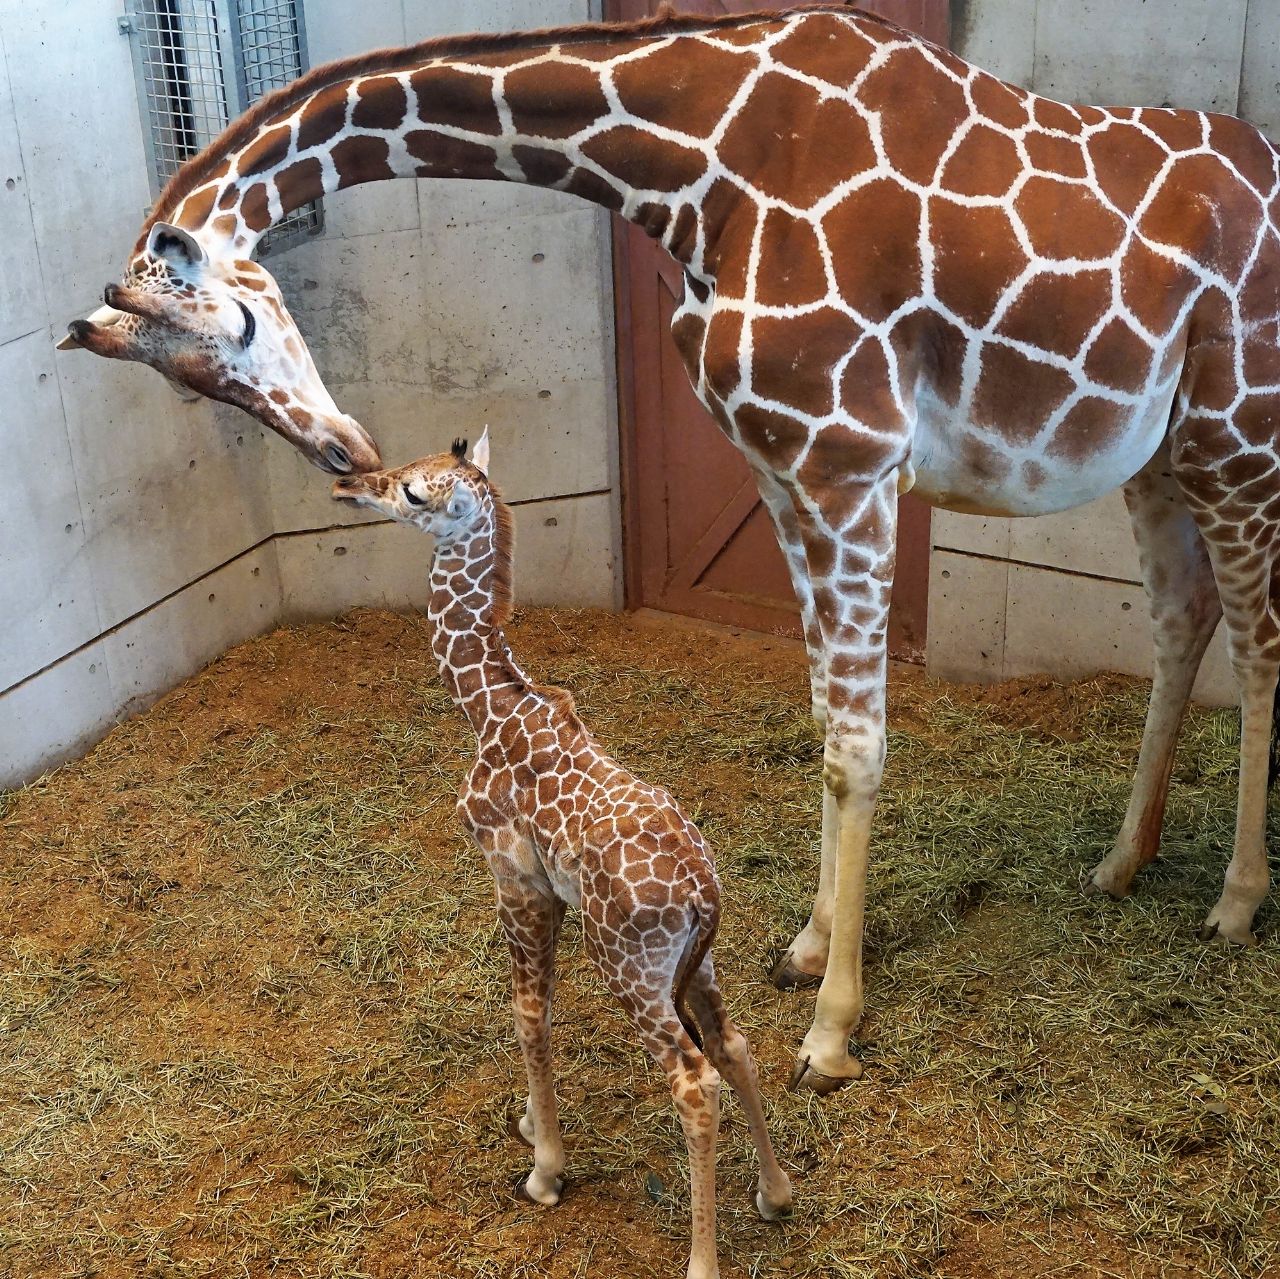 福岡市動物園ブログ 福岡市動物園に待望のキリンの赤ちゃん誕生